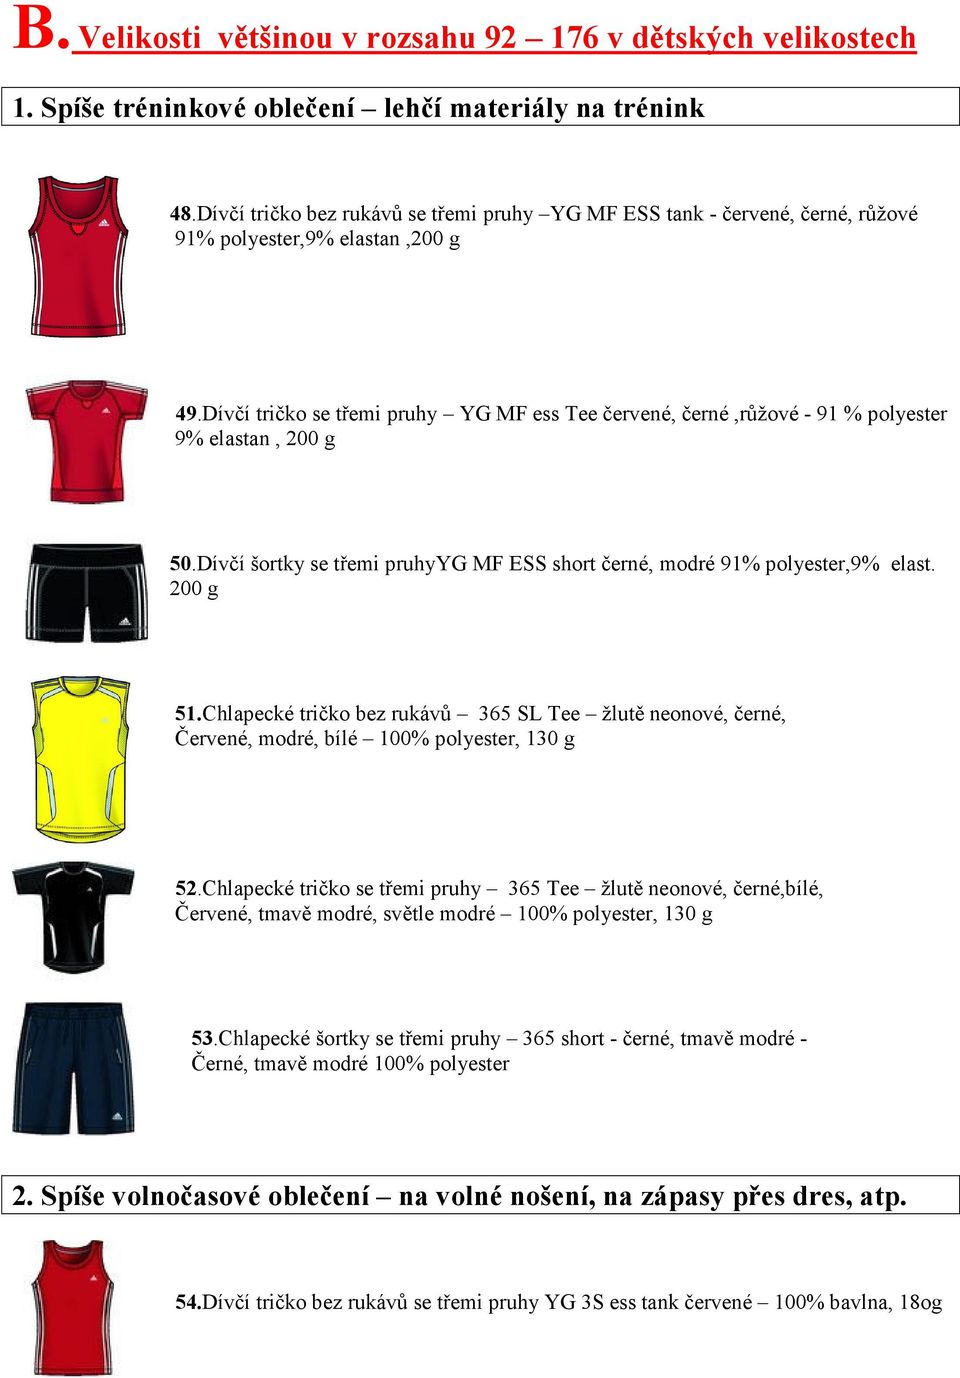 Dívčí tričko se třemi pruhy YG MF ess Tee červené, černé,růžové - 91 % polyester 9% elastan, 200 g 50.Dívčí šortky se třemi pruhyyg MF ESS short černé, modré 91% polyester,9% elast. 200 g 51.